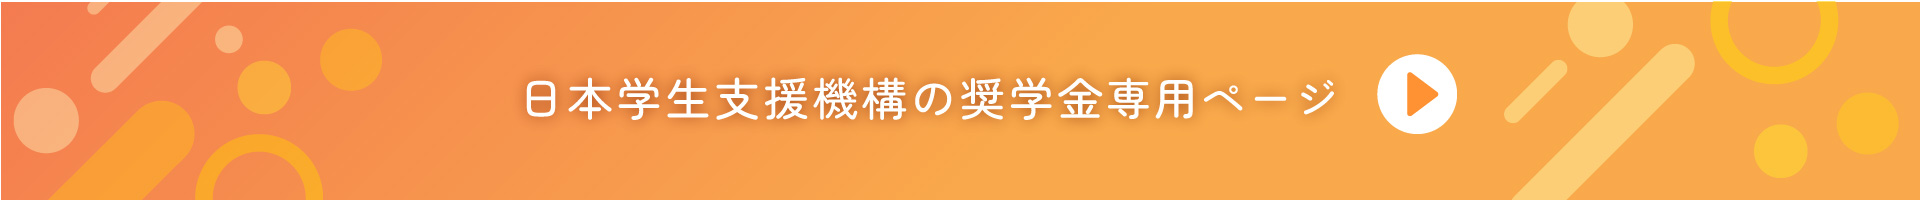 日本学生支援機構の奨学金専用ページ バナー